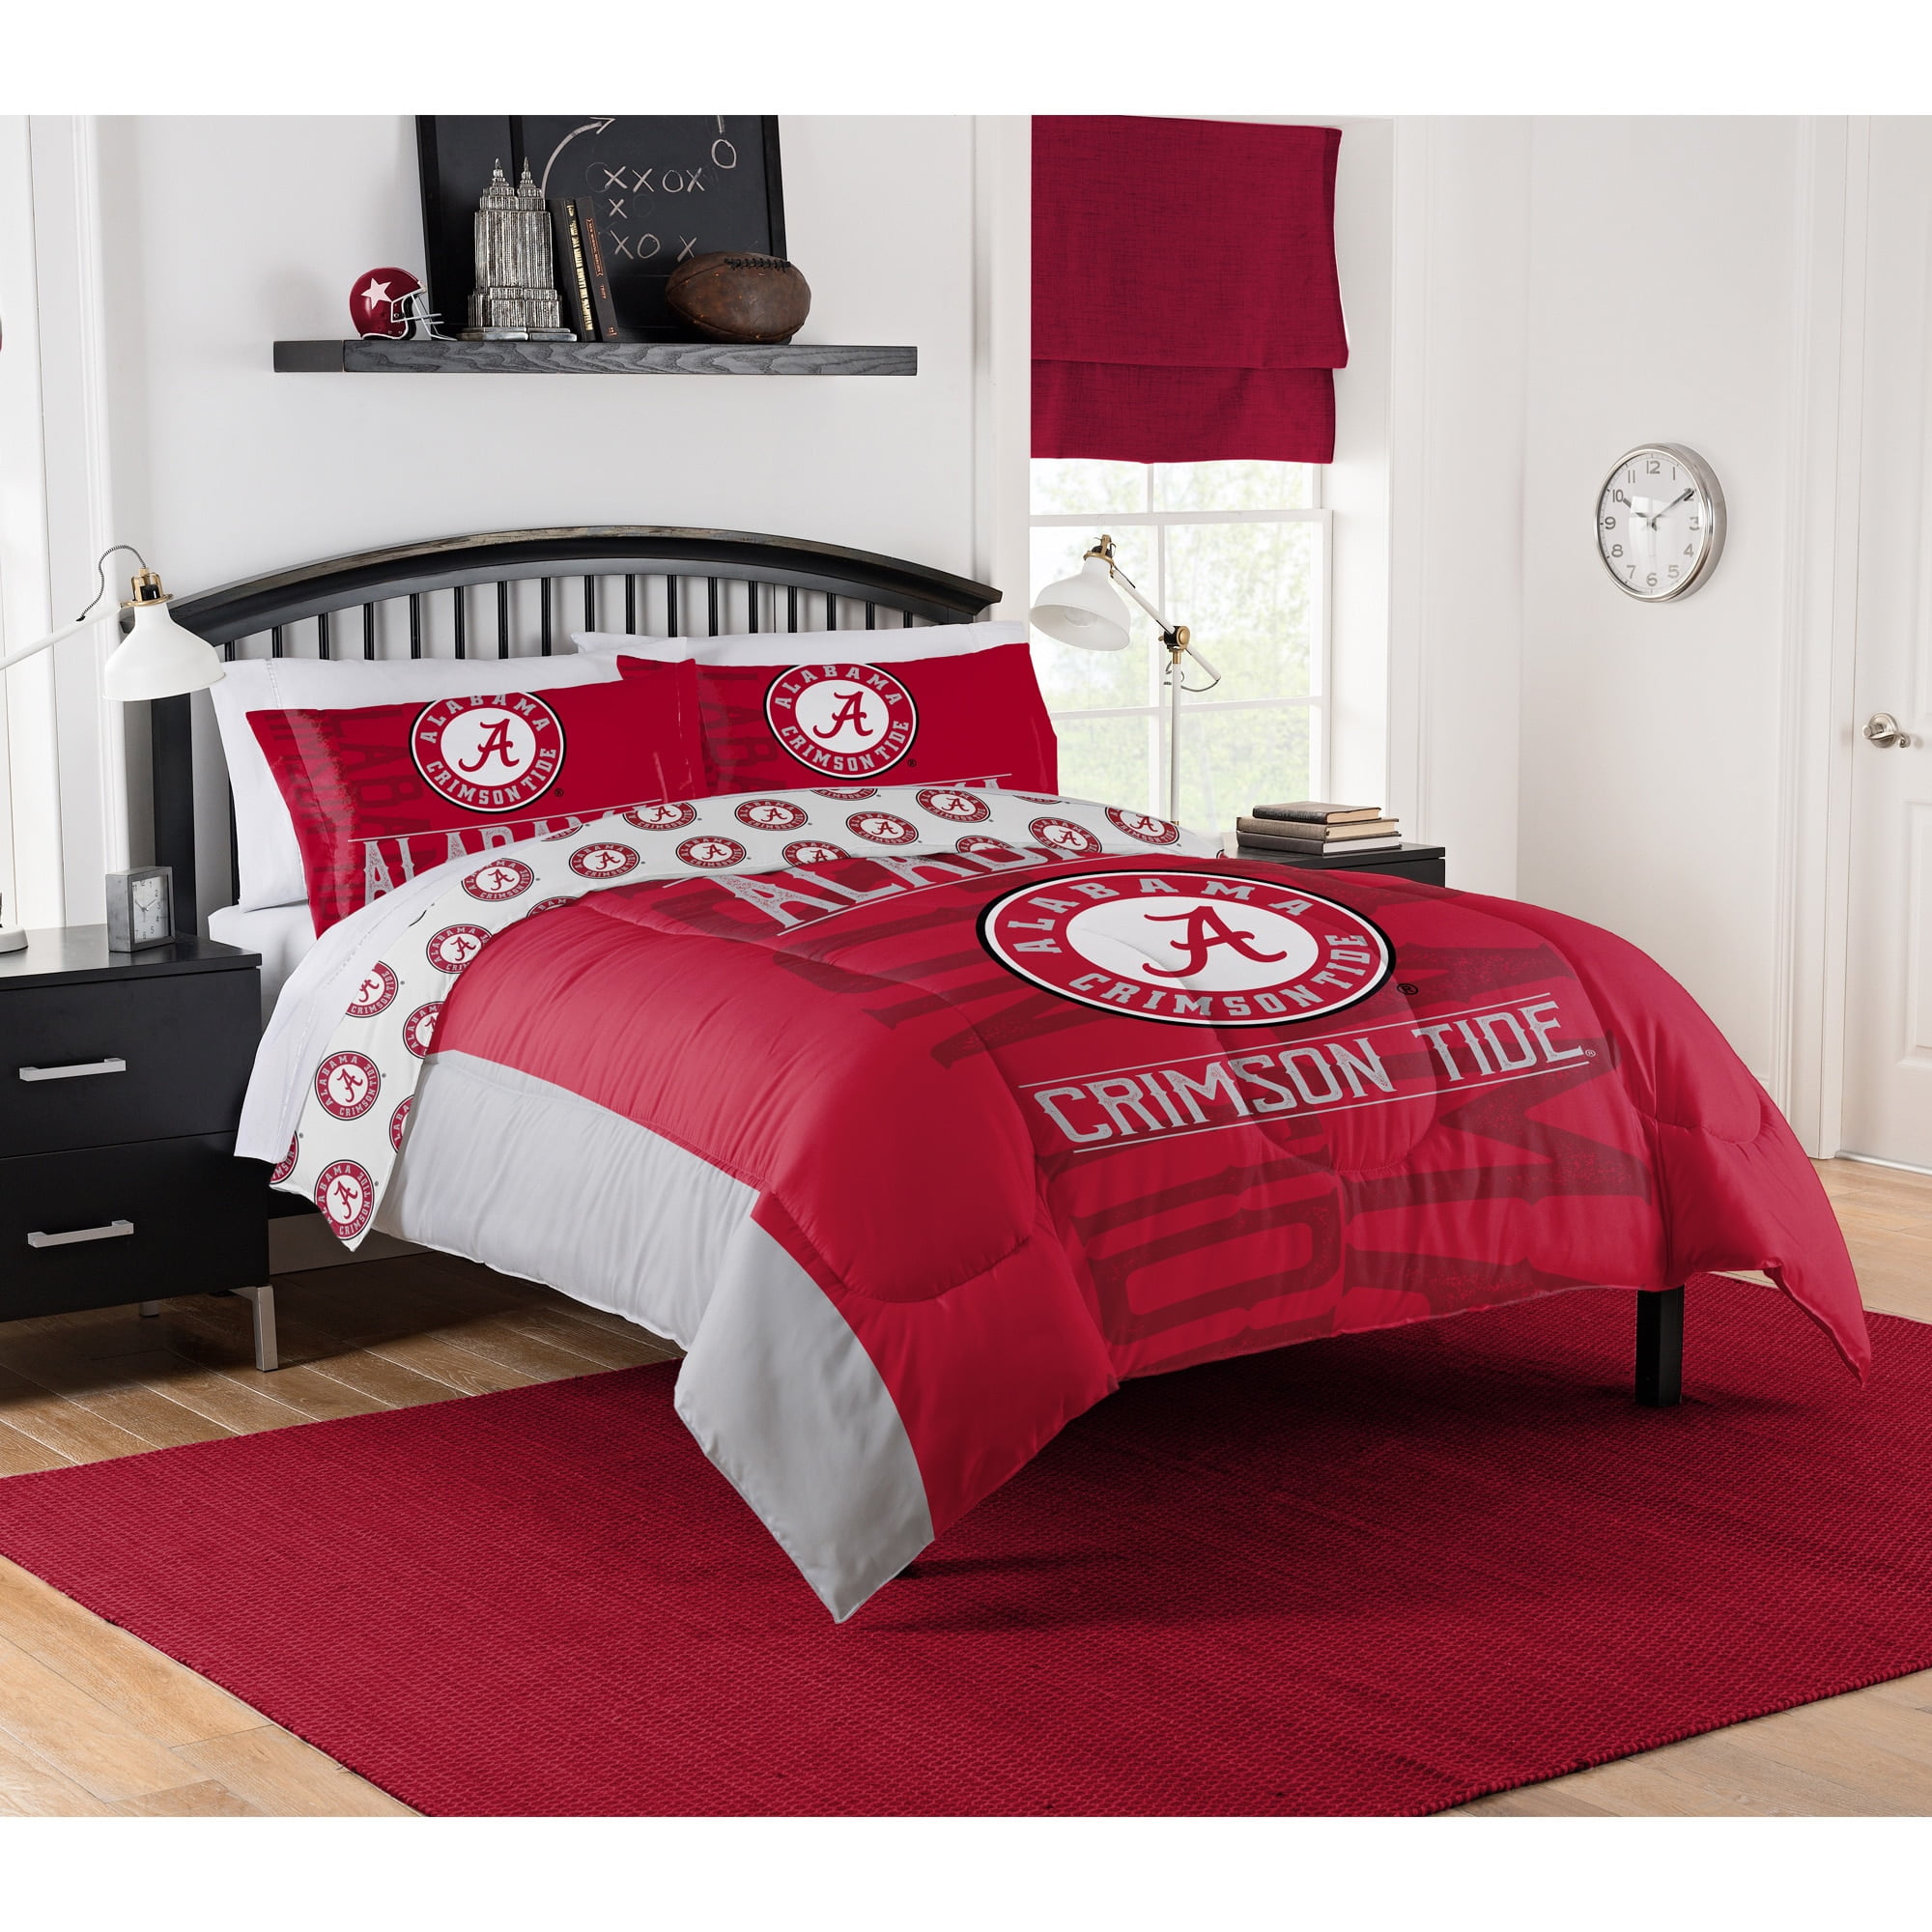 Alabama Crimson Tide V1 Quilt Blanket Bedding Family Gift For Him Father's Day